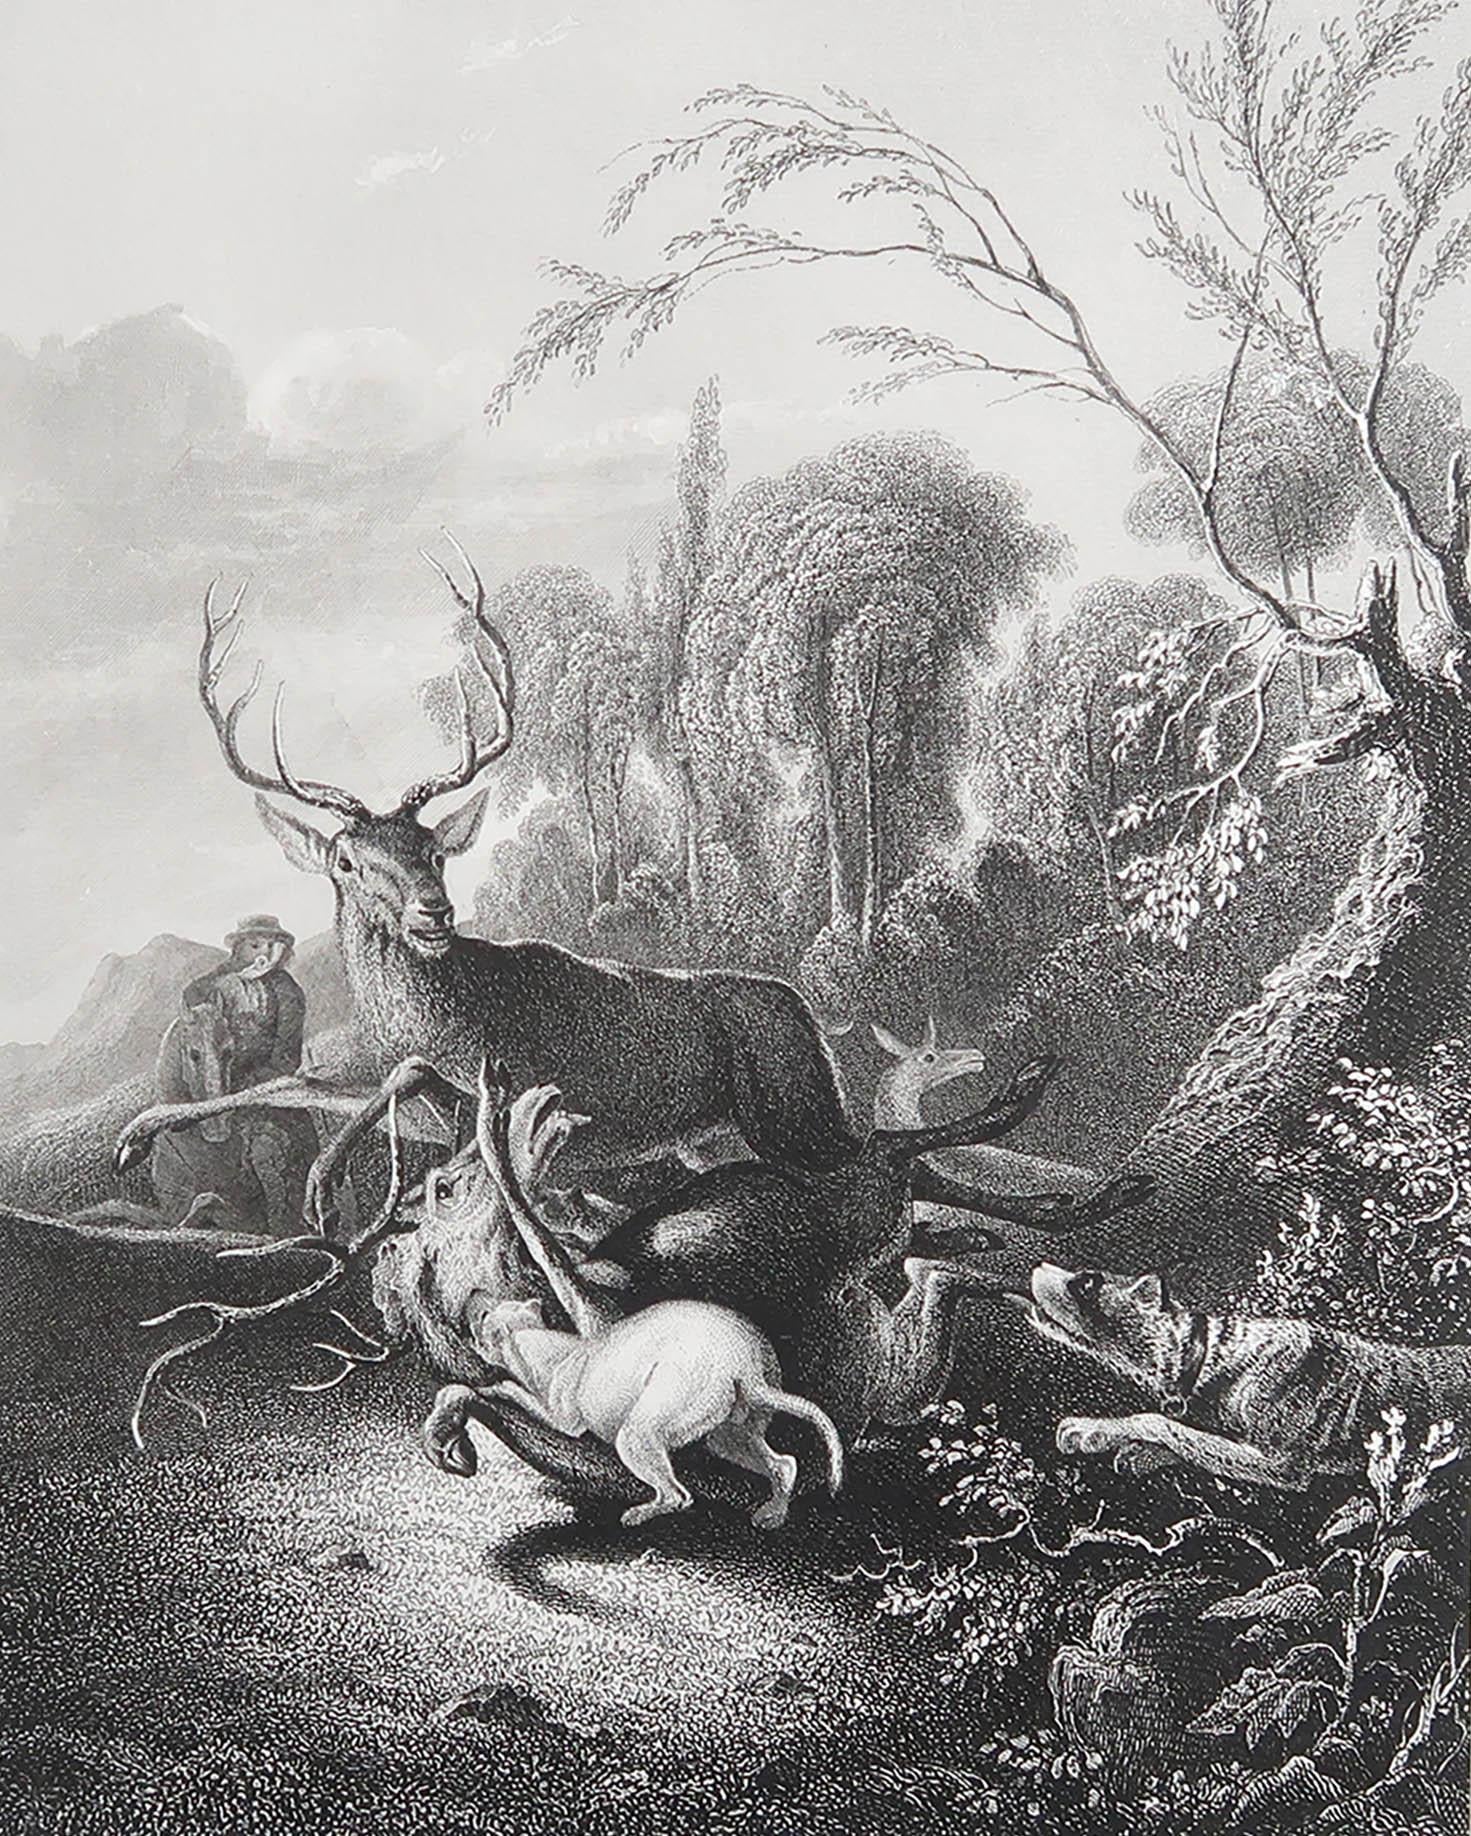 Wunderschönes Bild nach Ruthart

Feiner Stahlstich. 

Veröffentlicht von Payne C.1850

Ungerahmt.

